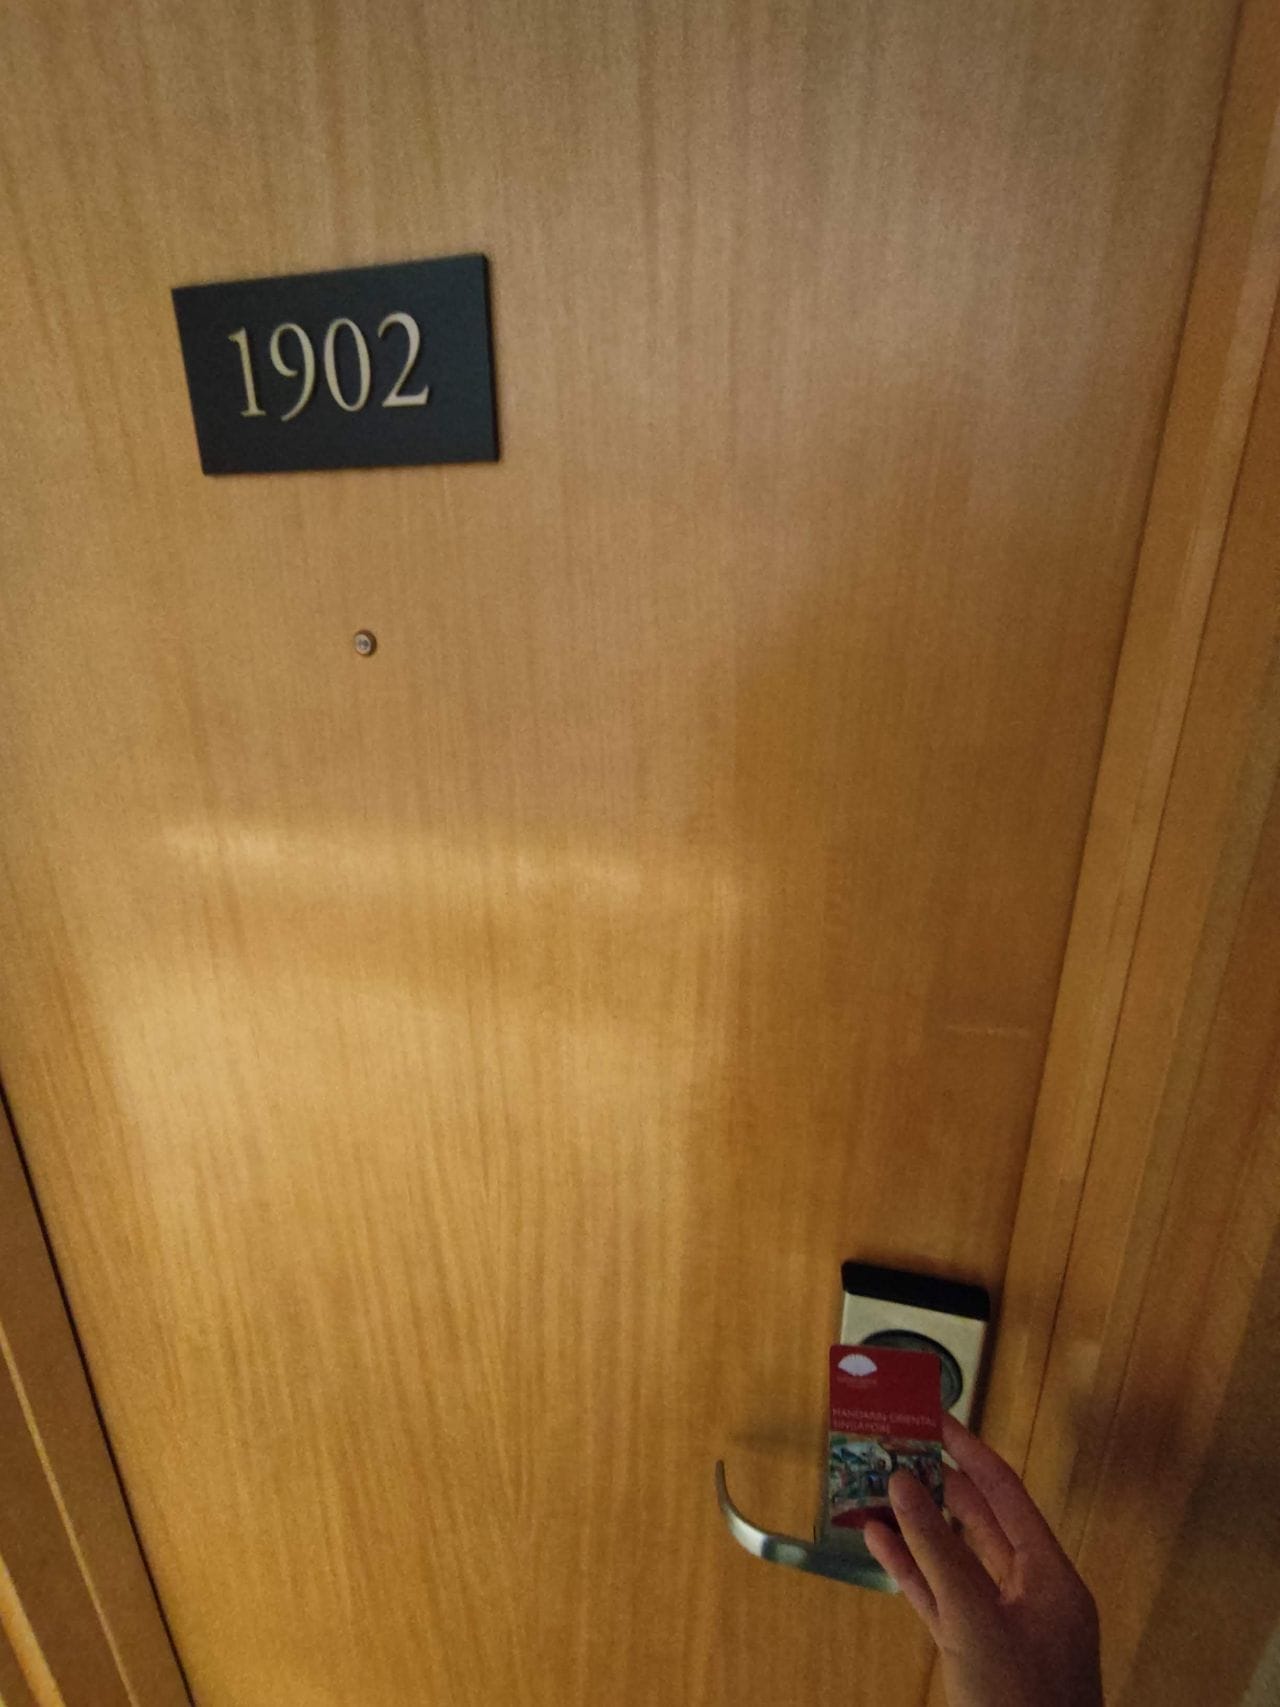 Room 1902